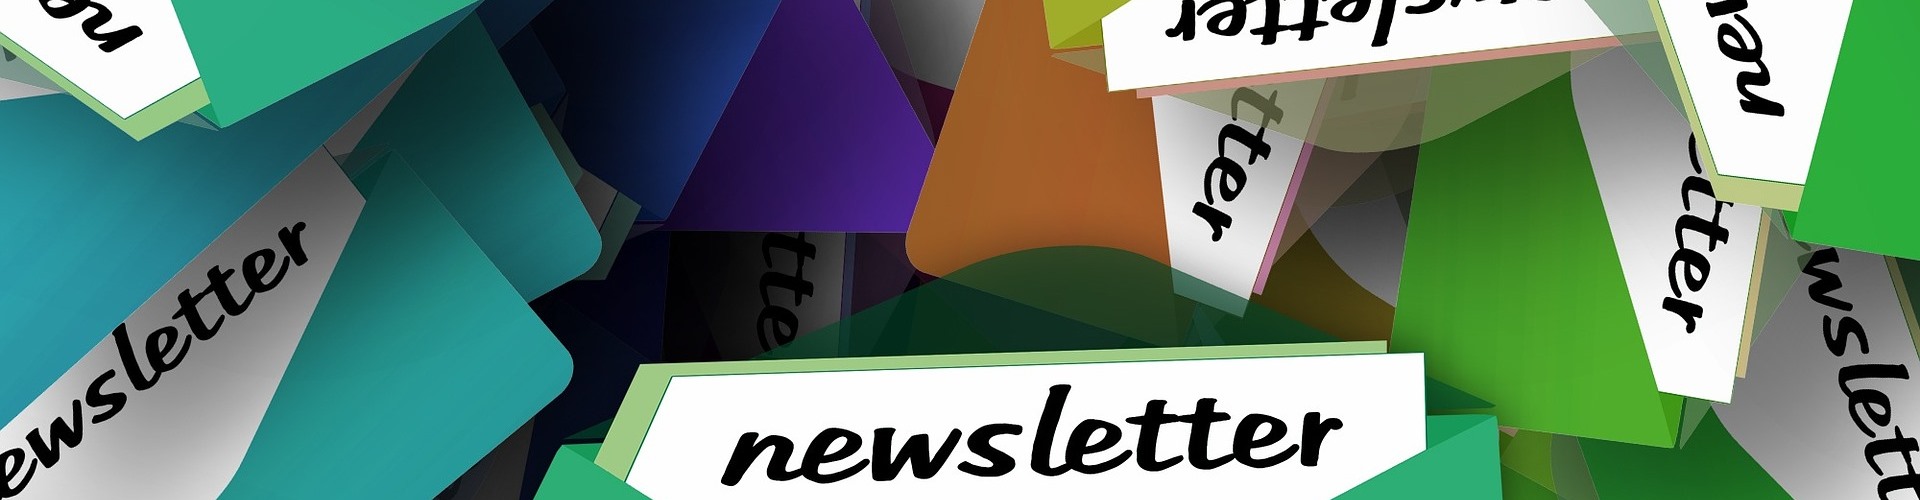 Eine Darstellung von mehreren bunten Briefumschlägen, aus denen ein Brief mit dem Schriftzug Newsletter herausblitzt.